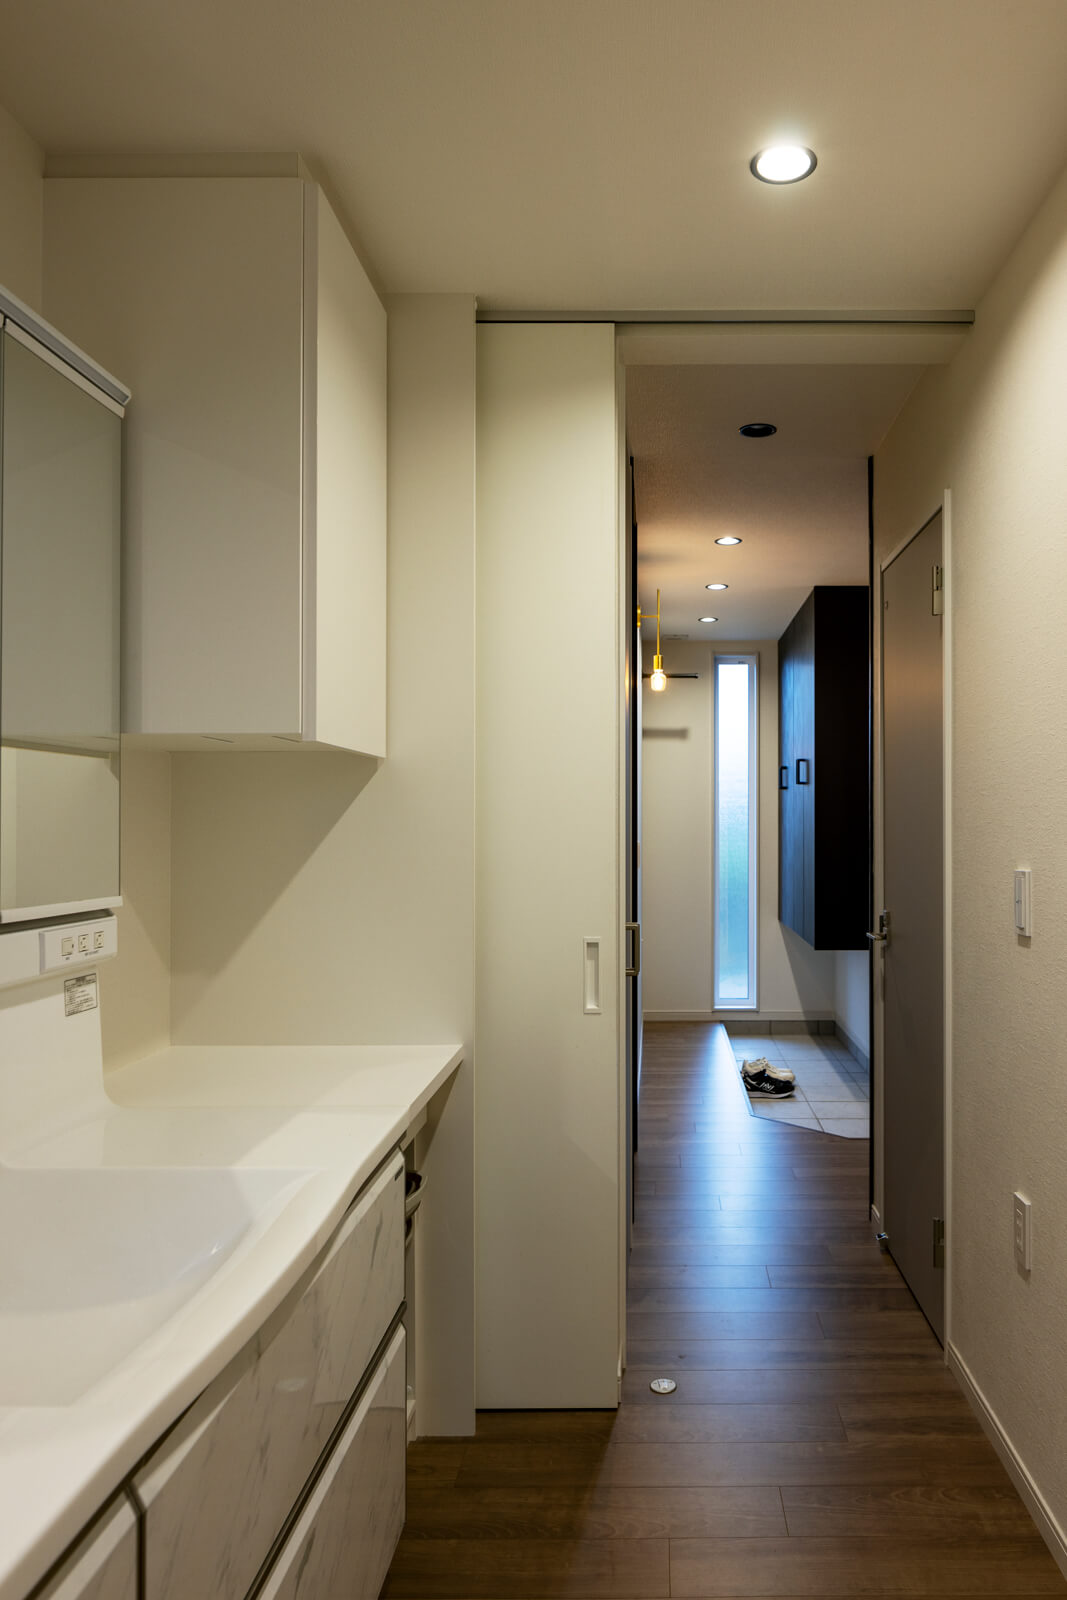 玄関ホールから最短の動線でつながる洗面スペース。脱衣室から独立させることで家族の使い勝手の良さを考慮